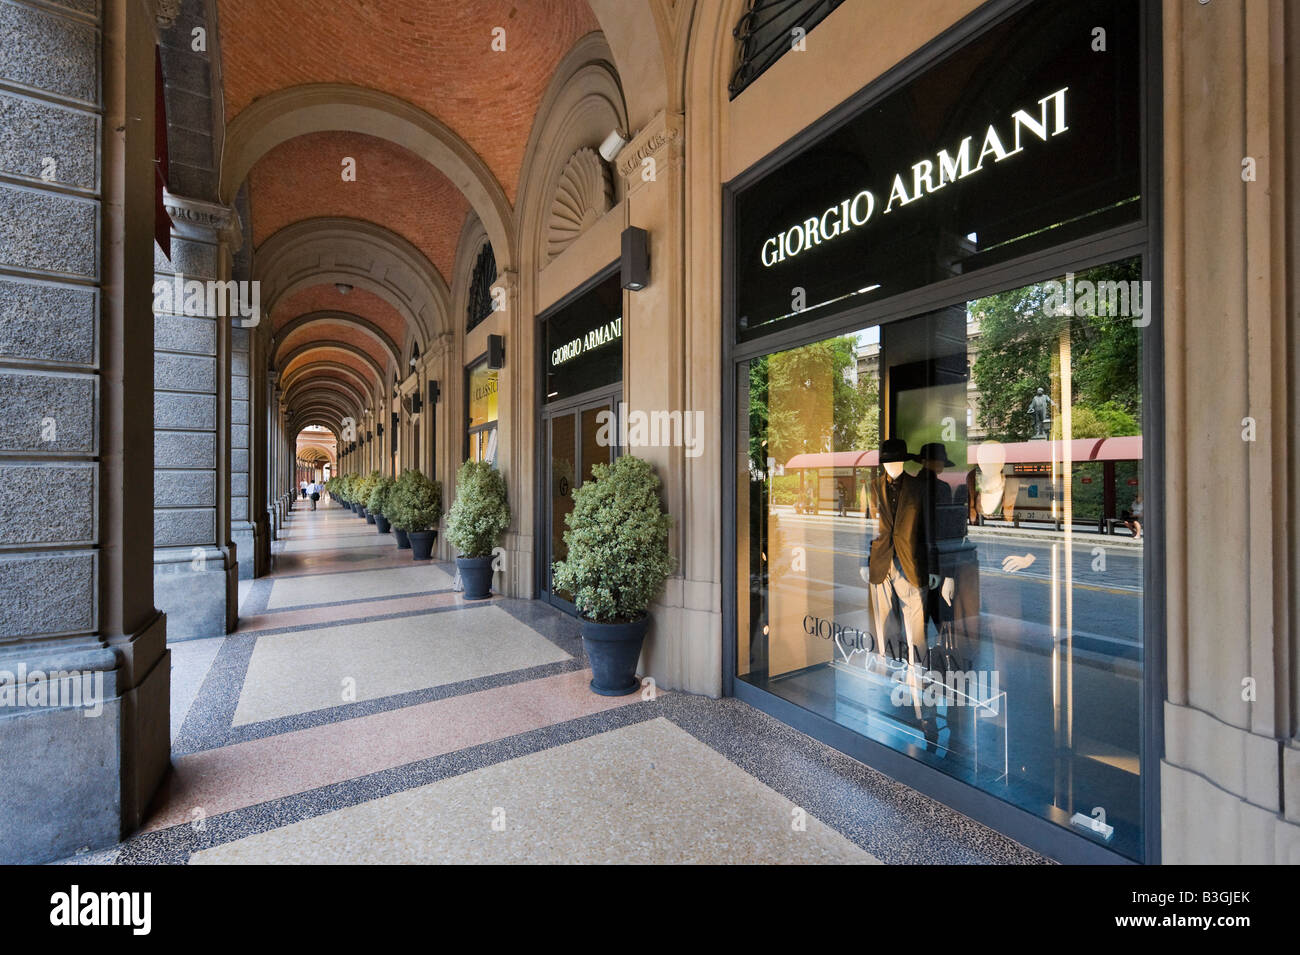 Giorgio Armani store in a portico on Via Farini in the historic centre, Bologna, Emilia Romagna, Italy Stock Photo